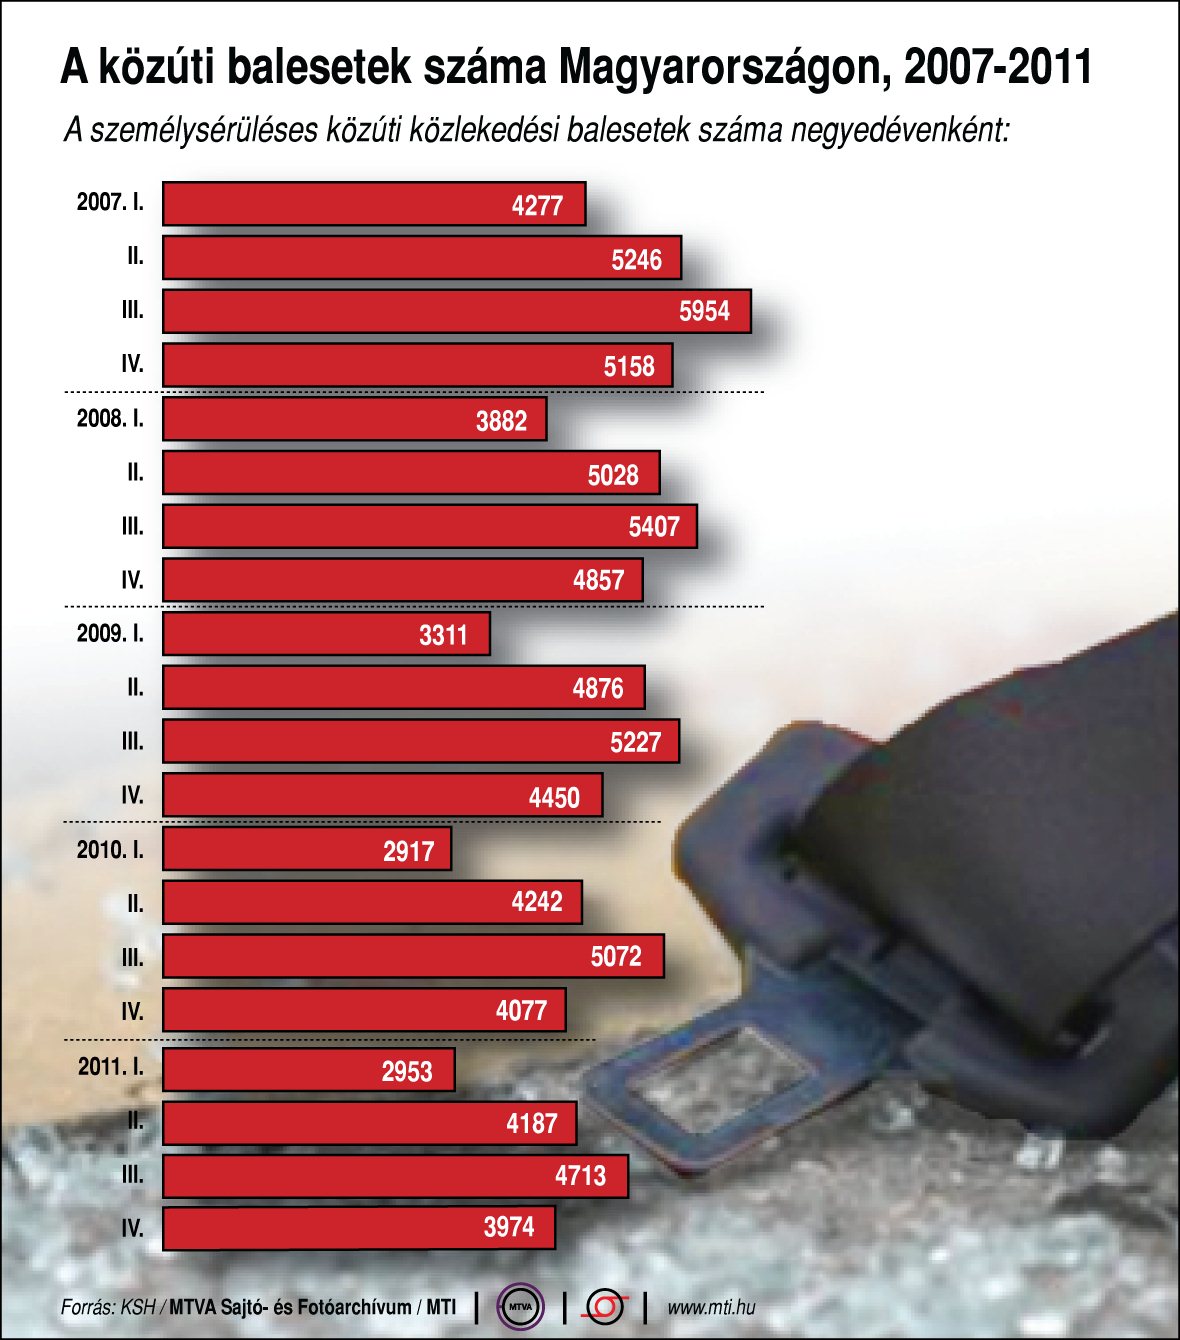 A személysérüléses közúti közlekedési balesetek száma Magyarországon (2007-2011)